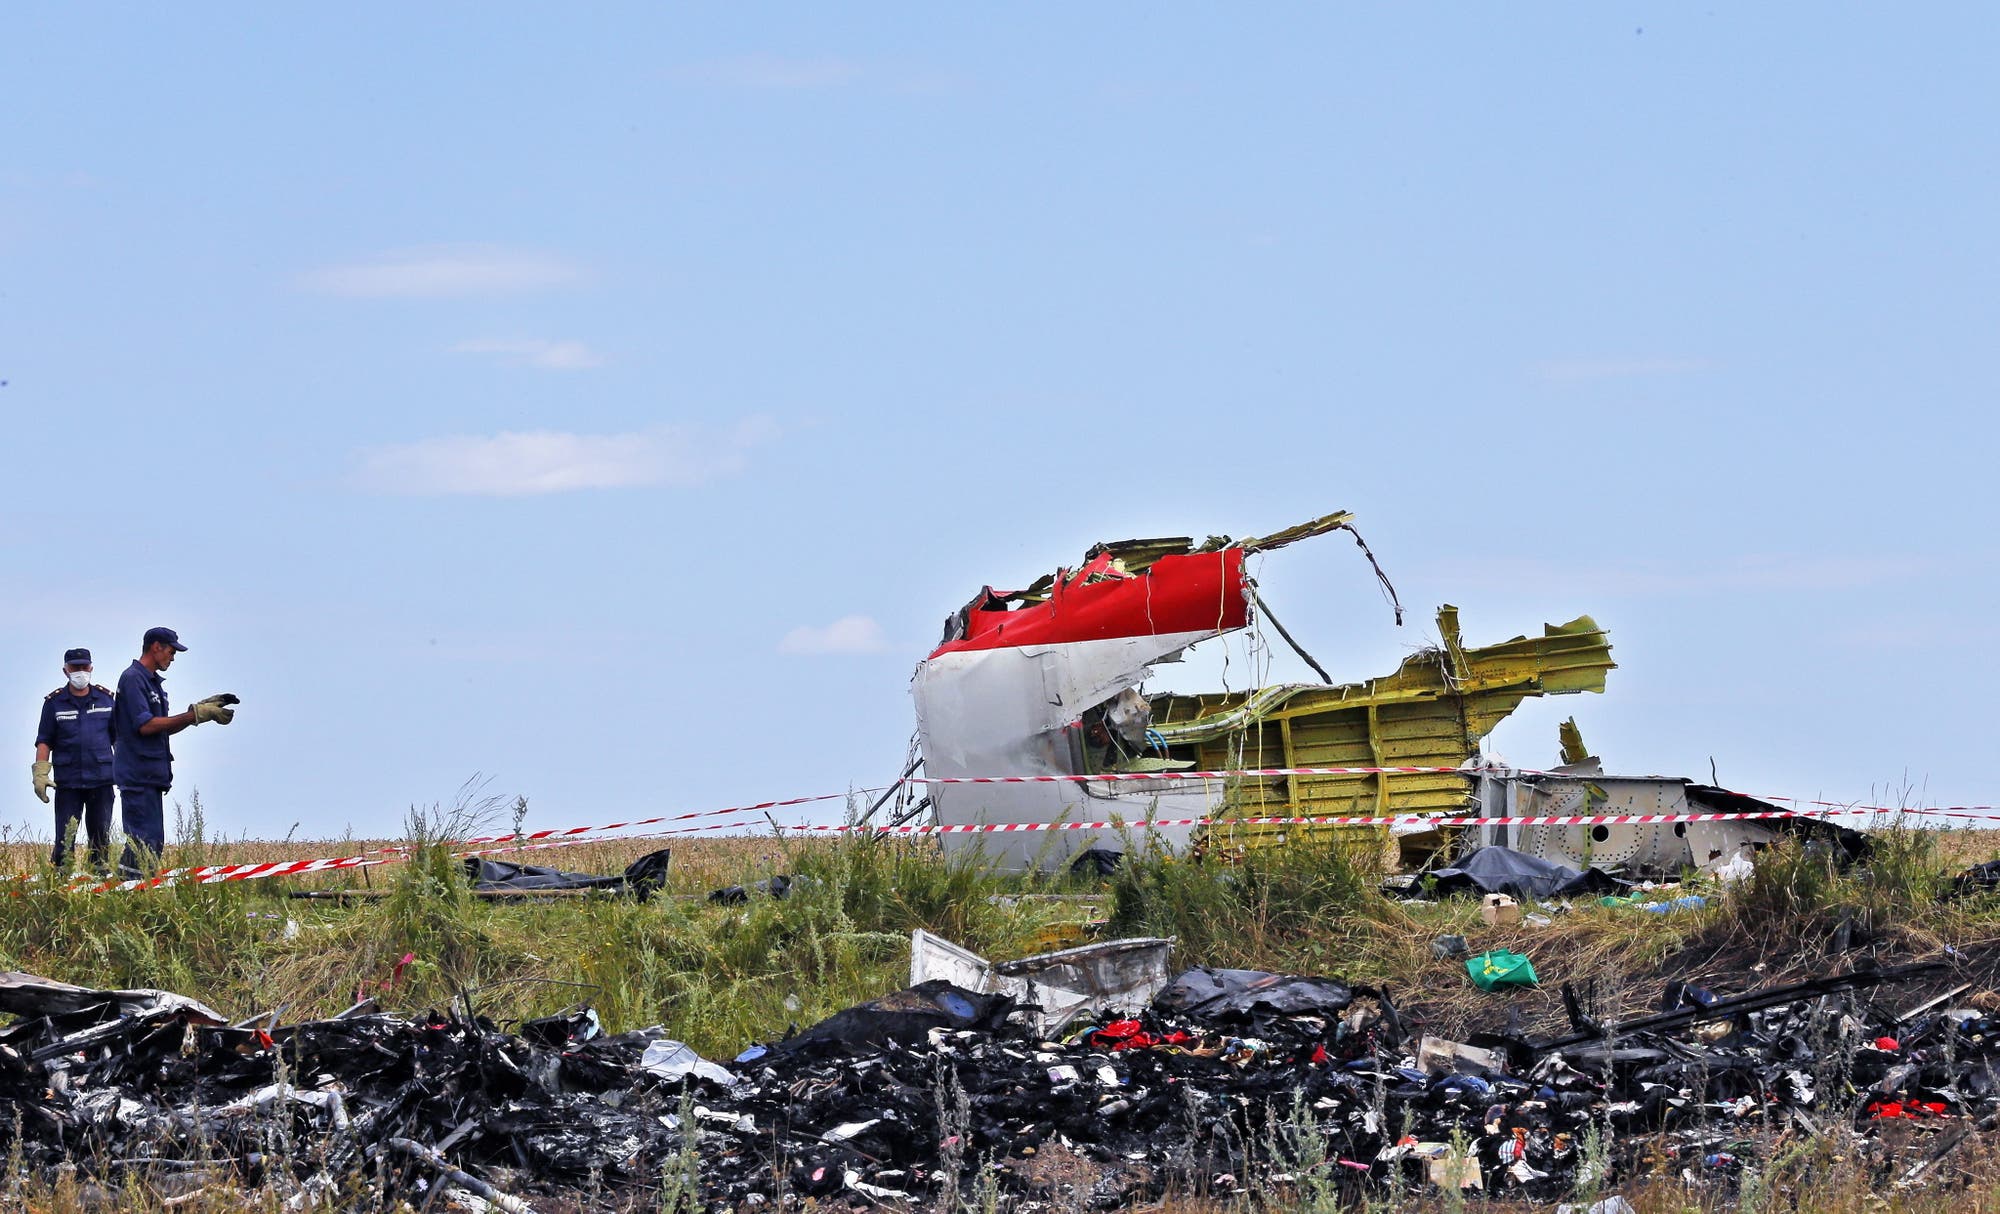 Wrackteil von MH17 an der Absturzstelle in der Ostukraine